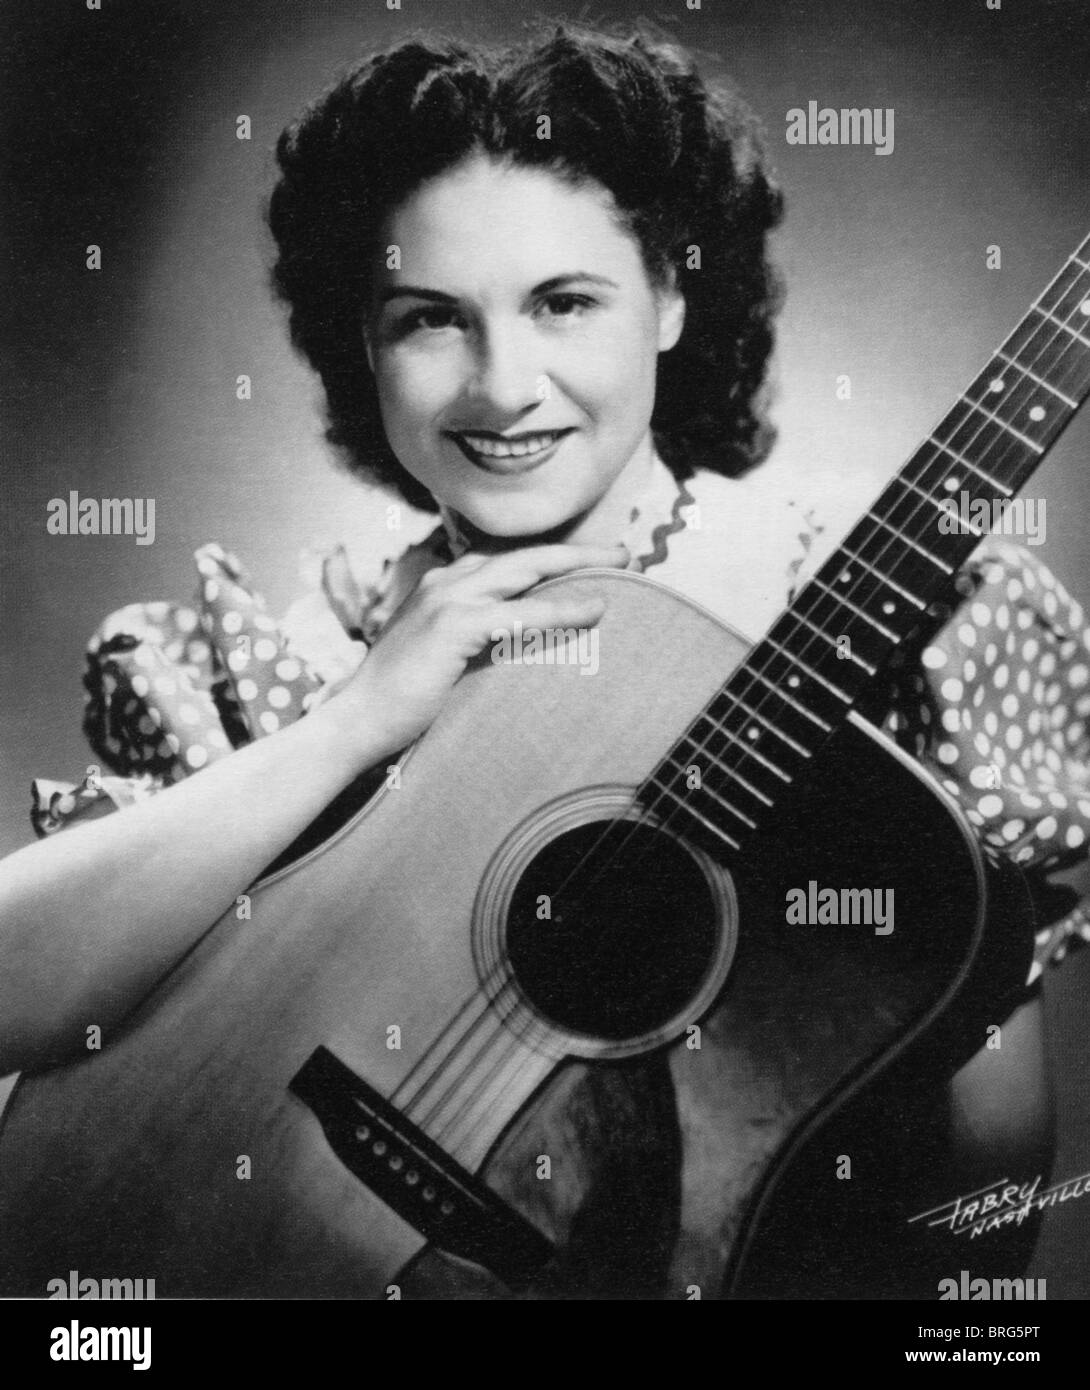 Há 60 anos, Kitty Wells abria portas da música country para mulheres;  conheça a história - 08/05/2012 - UOL Entretenimento